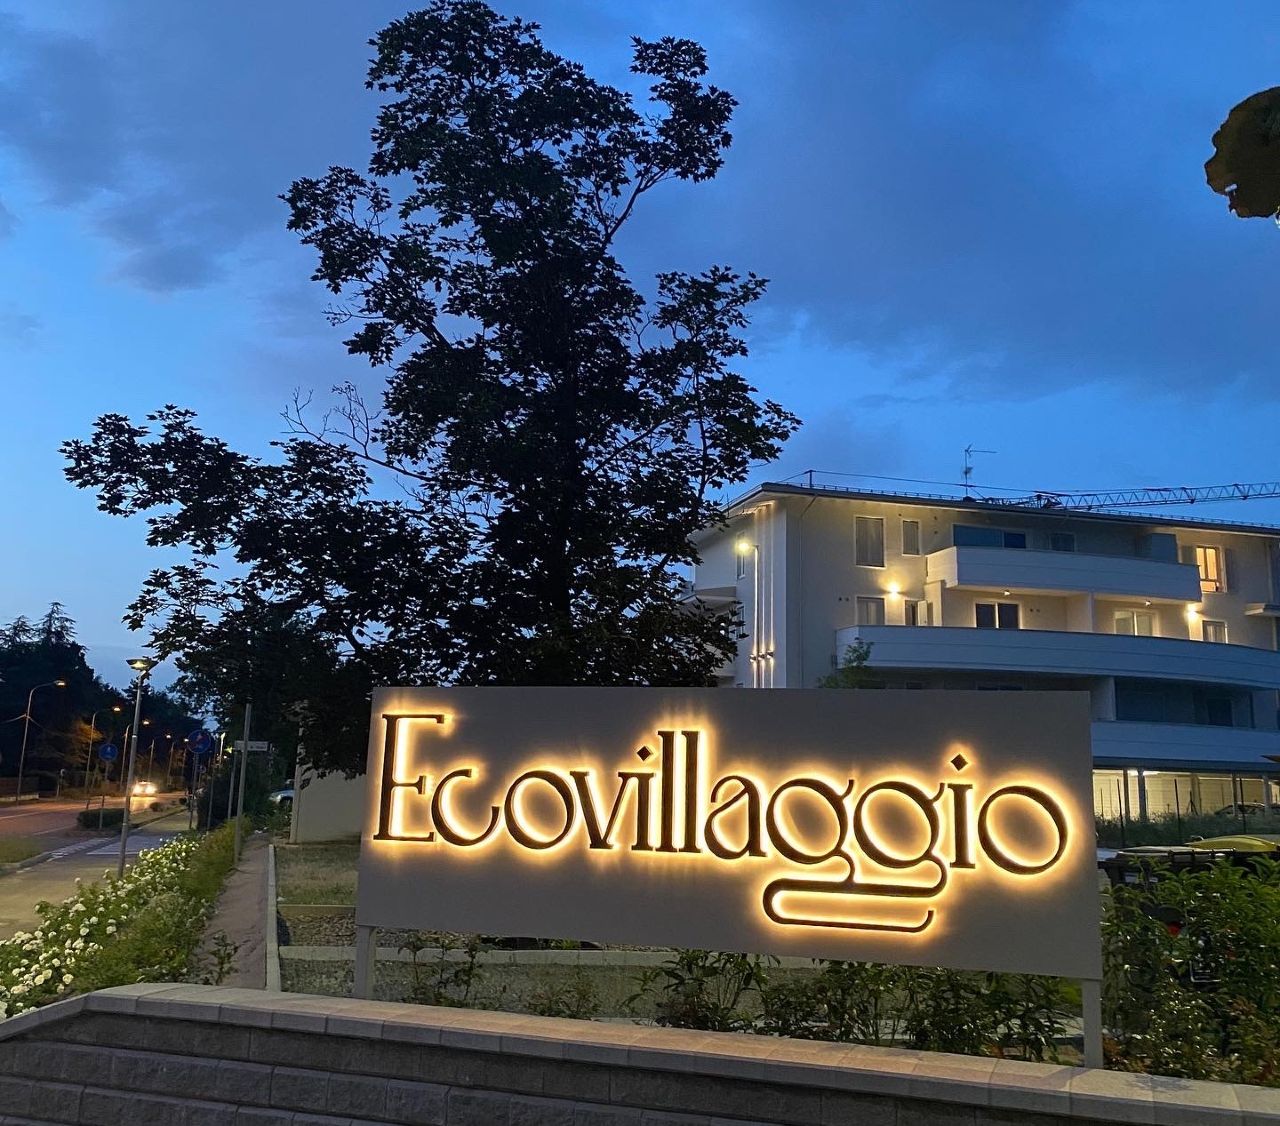 Ecovillaggio di Montale dedica una piazza al grande maestro Luciano Pavarotti